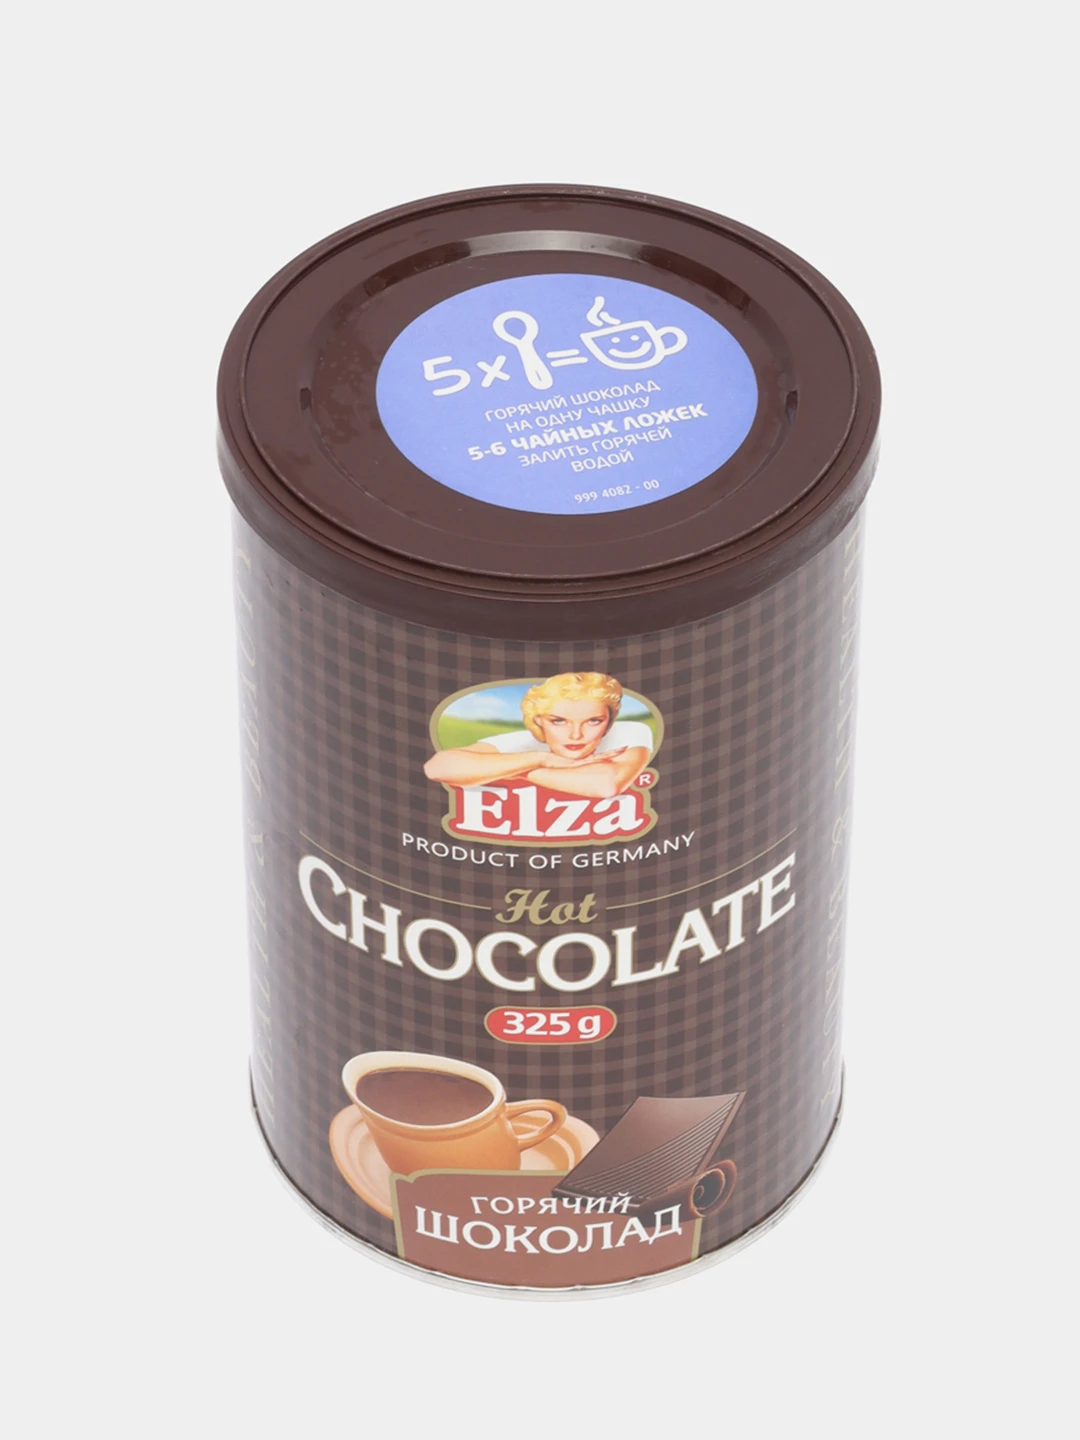 Горячий шоколад elza. Горячий шоколад Elza 325г. Горячий шоколад, Elza, 325. Горячий шоколад Elza растворимый порошкообразный напиток 325 г.